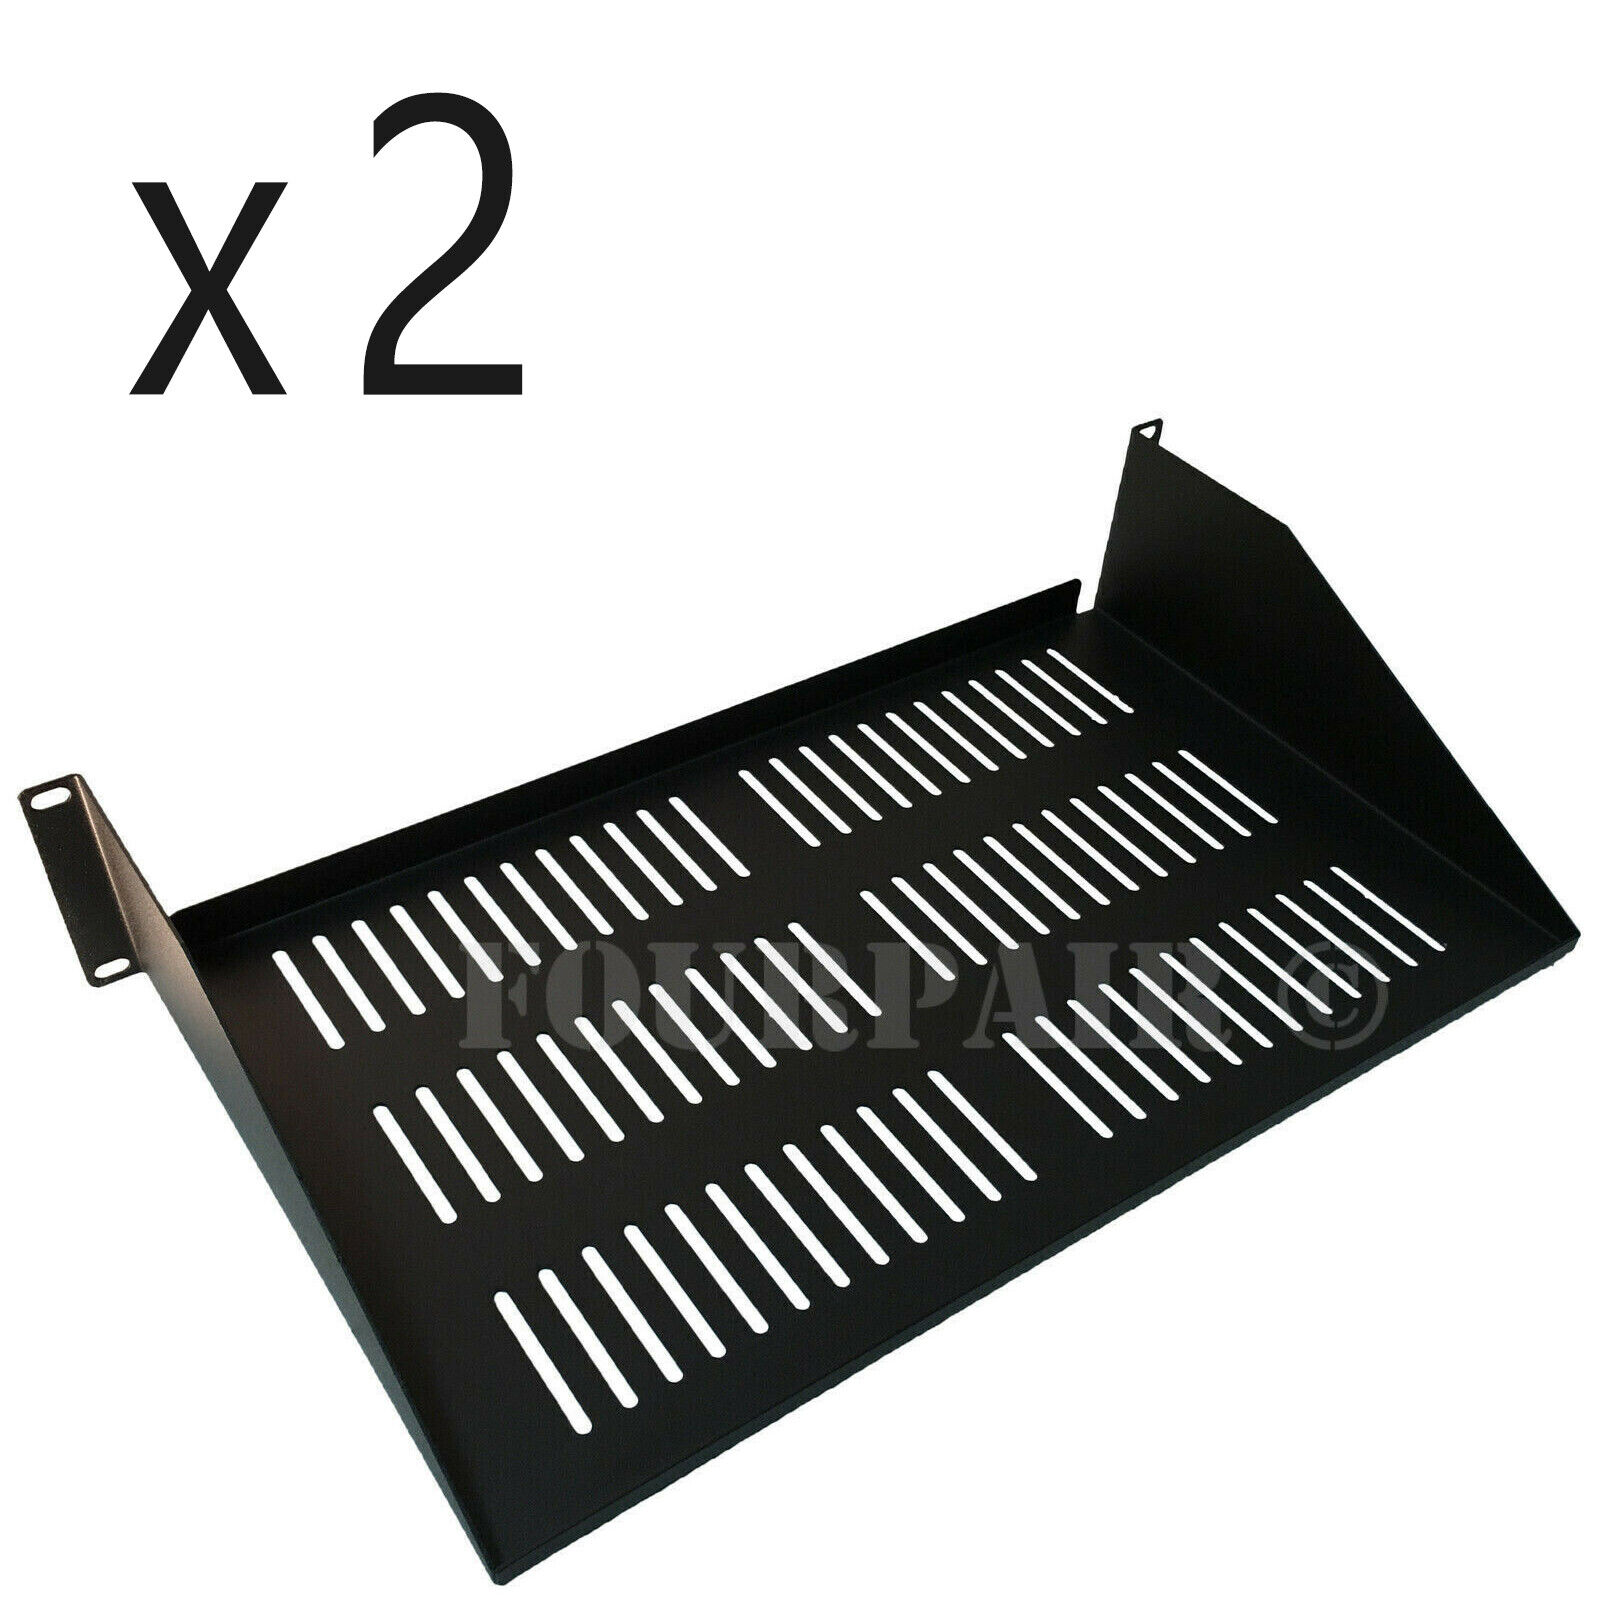 2 Pack Vented Cantilever Rack Mount Steel Keyboard Server Shelf 19